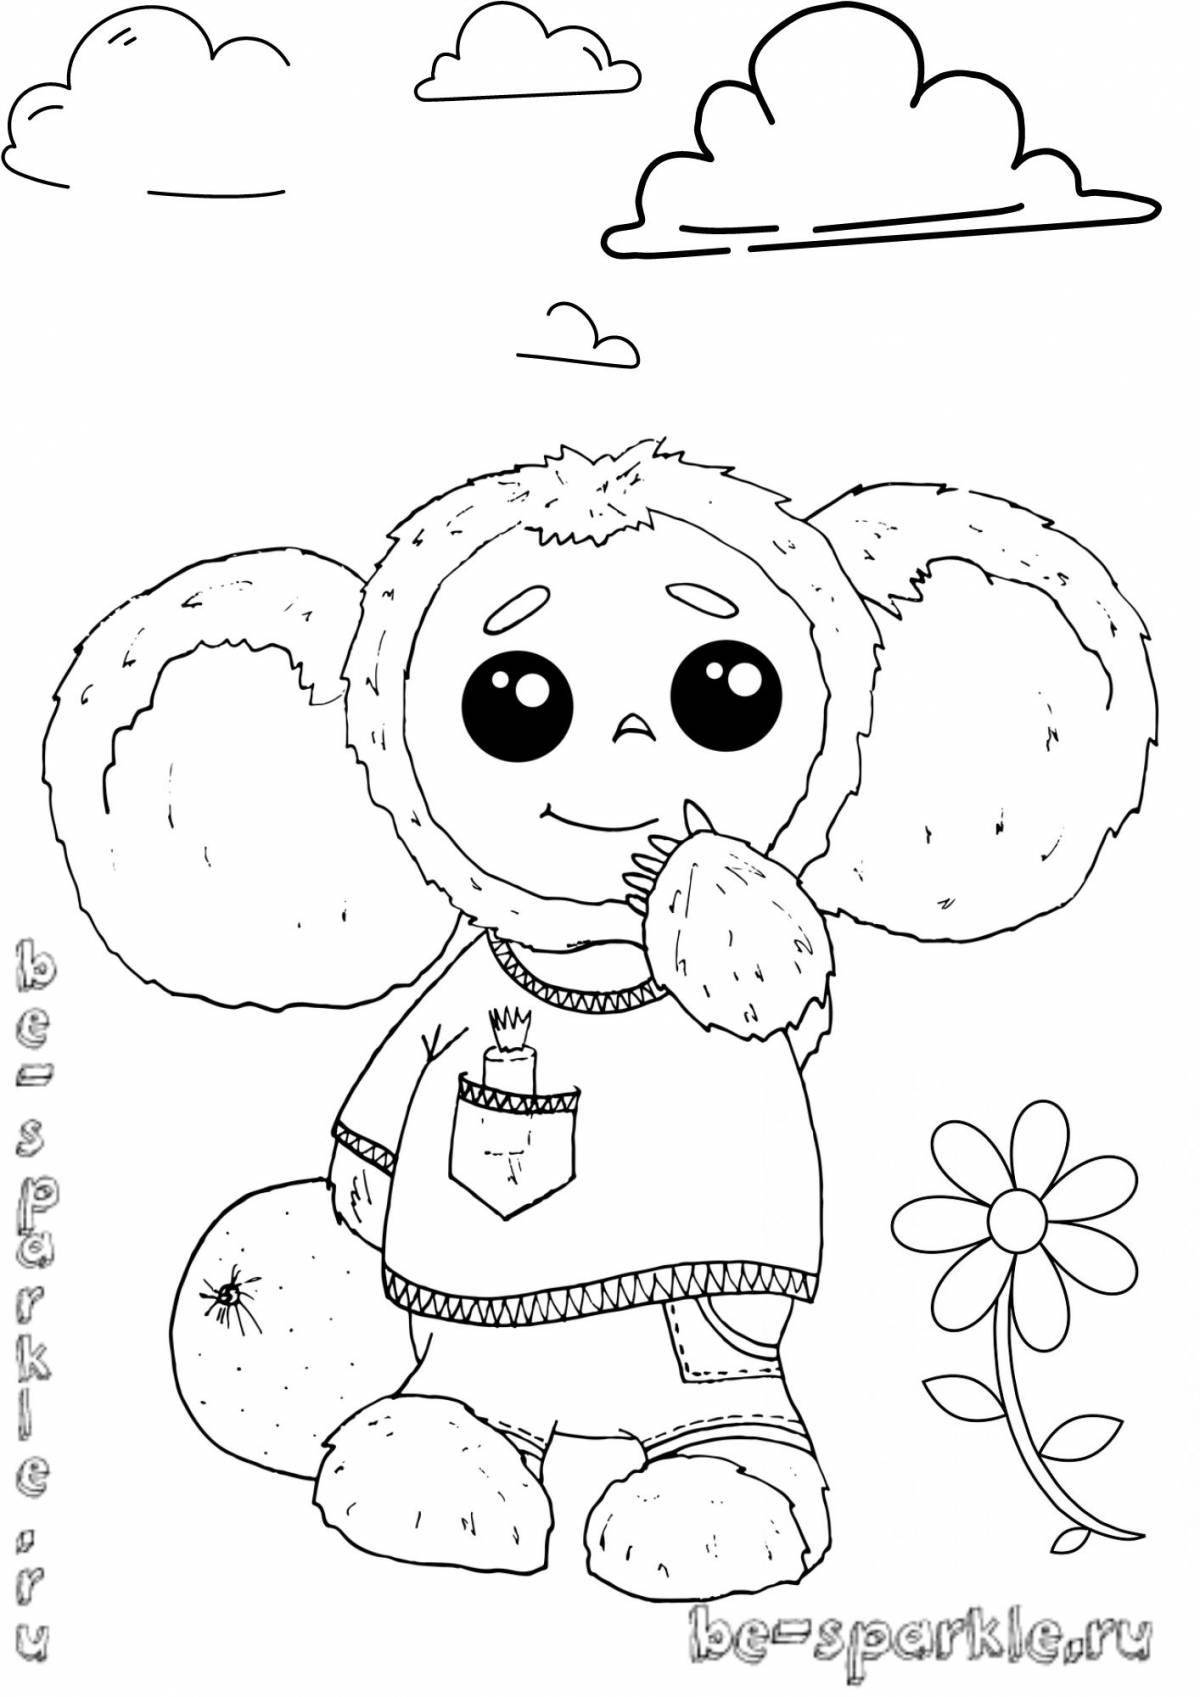 Great cheburashka antistress coloring book